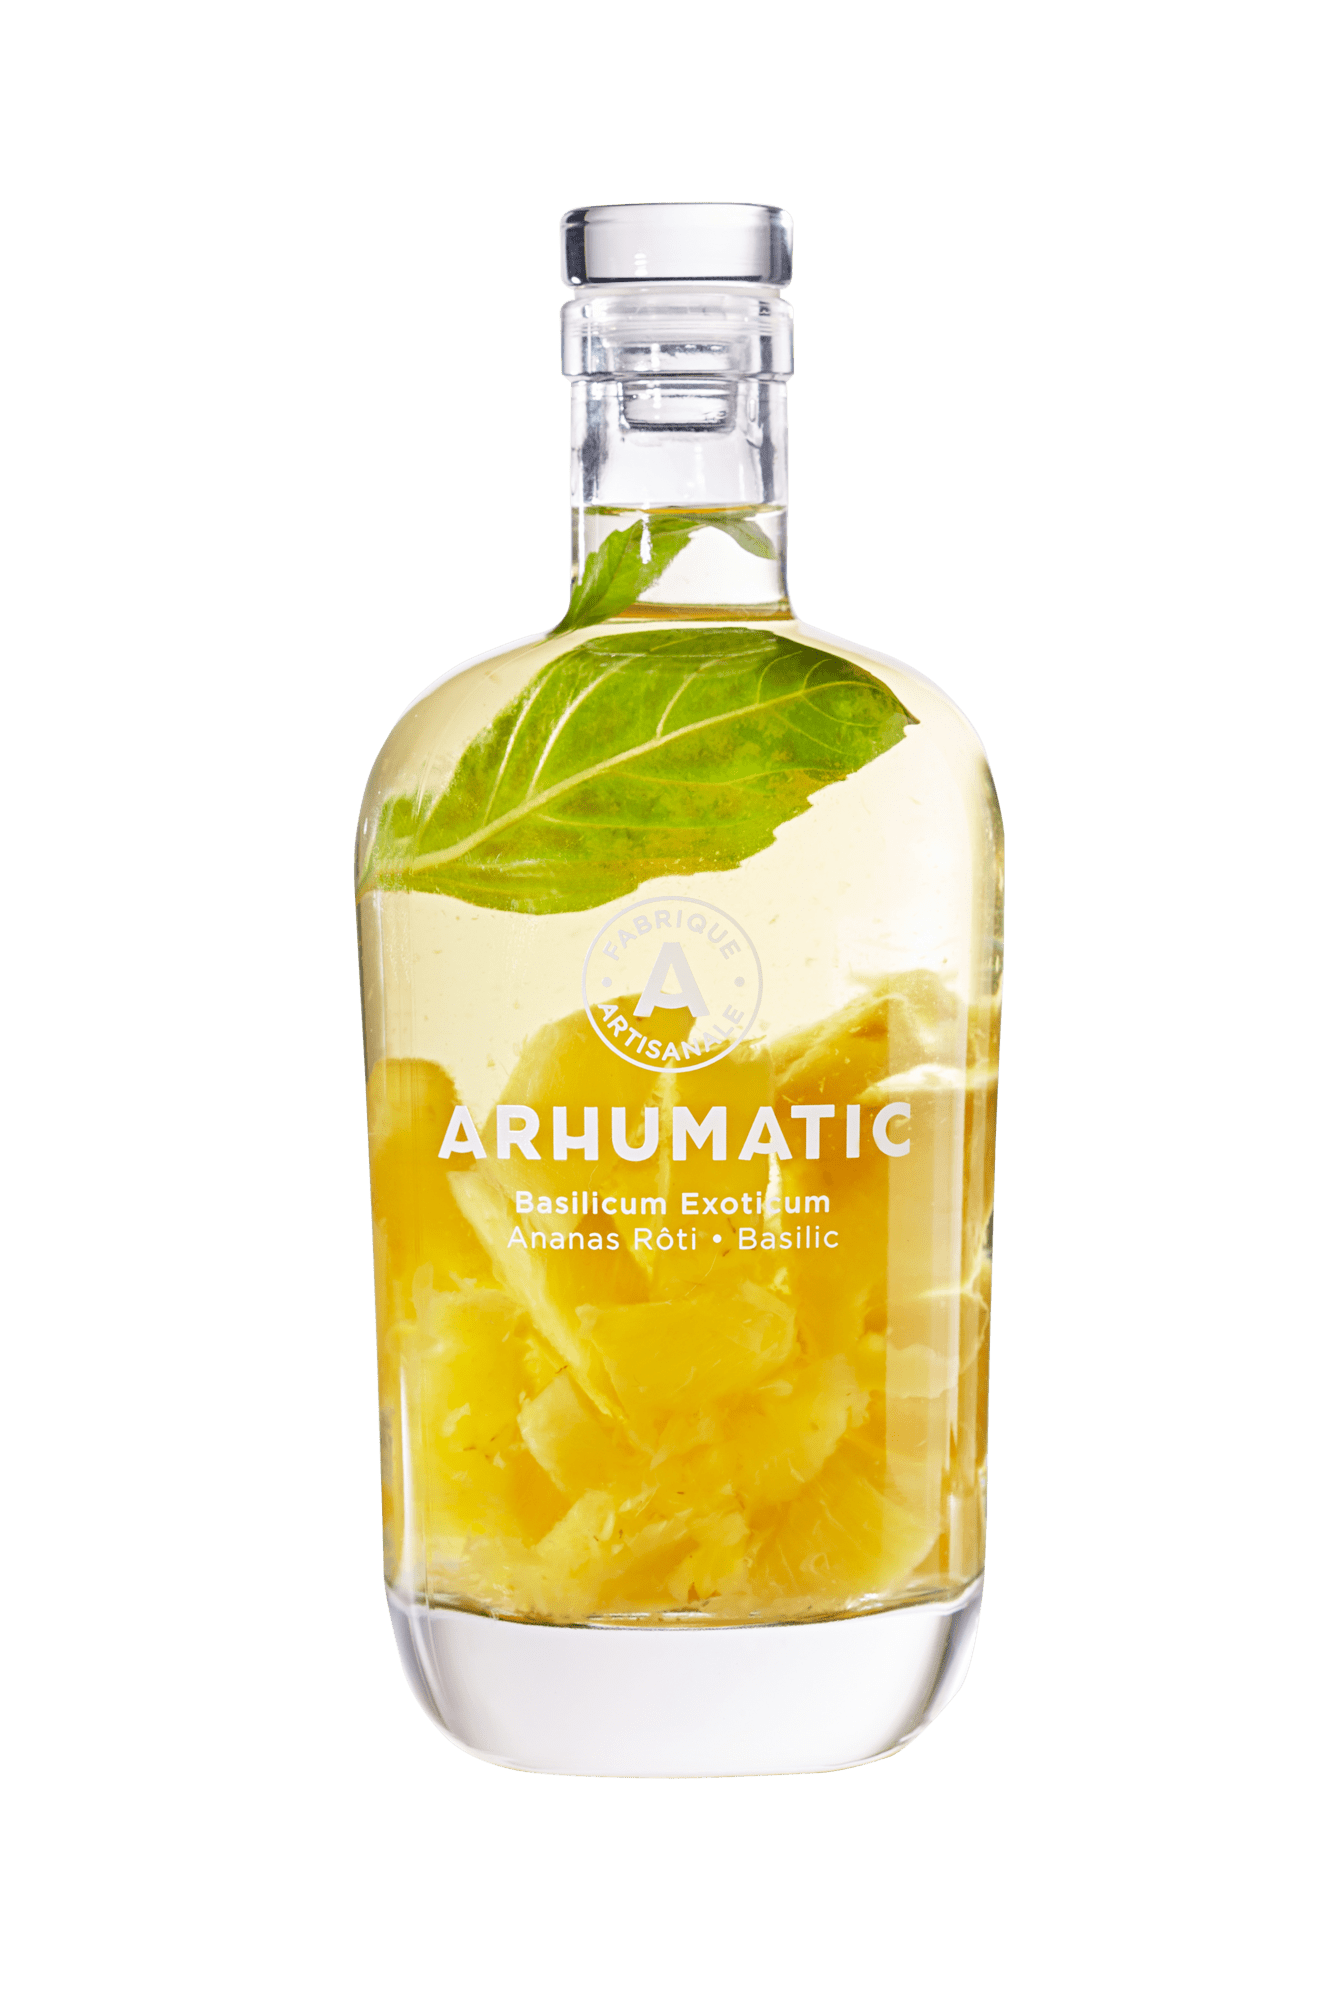 Arhumatic Ananas Rôti, Basilic